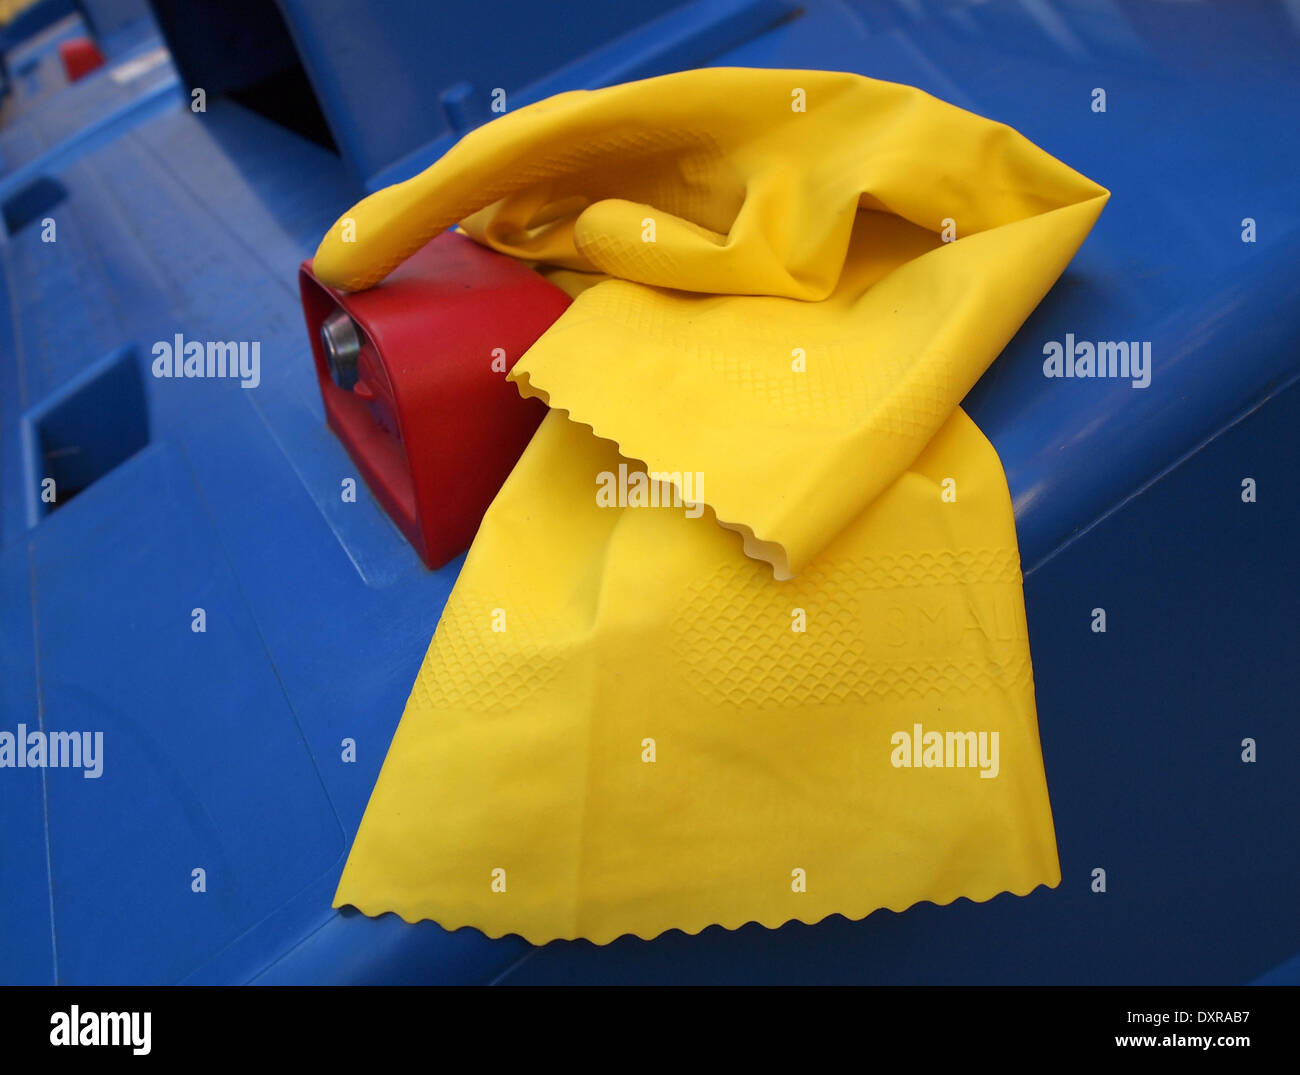 gelben Gummihandschuh auf einem blauen Mülleimer Stockfoto